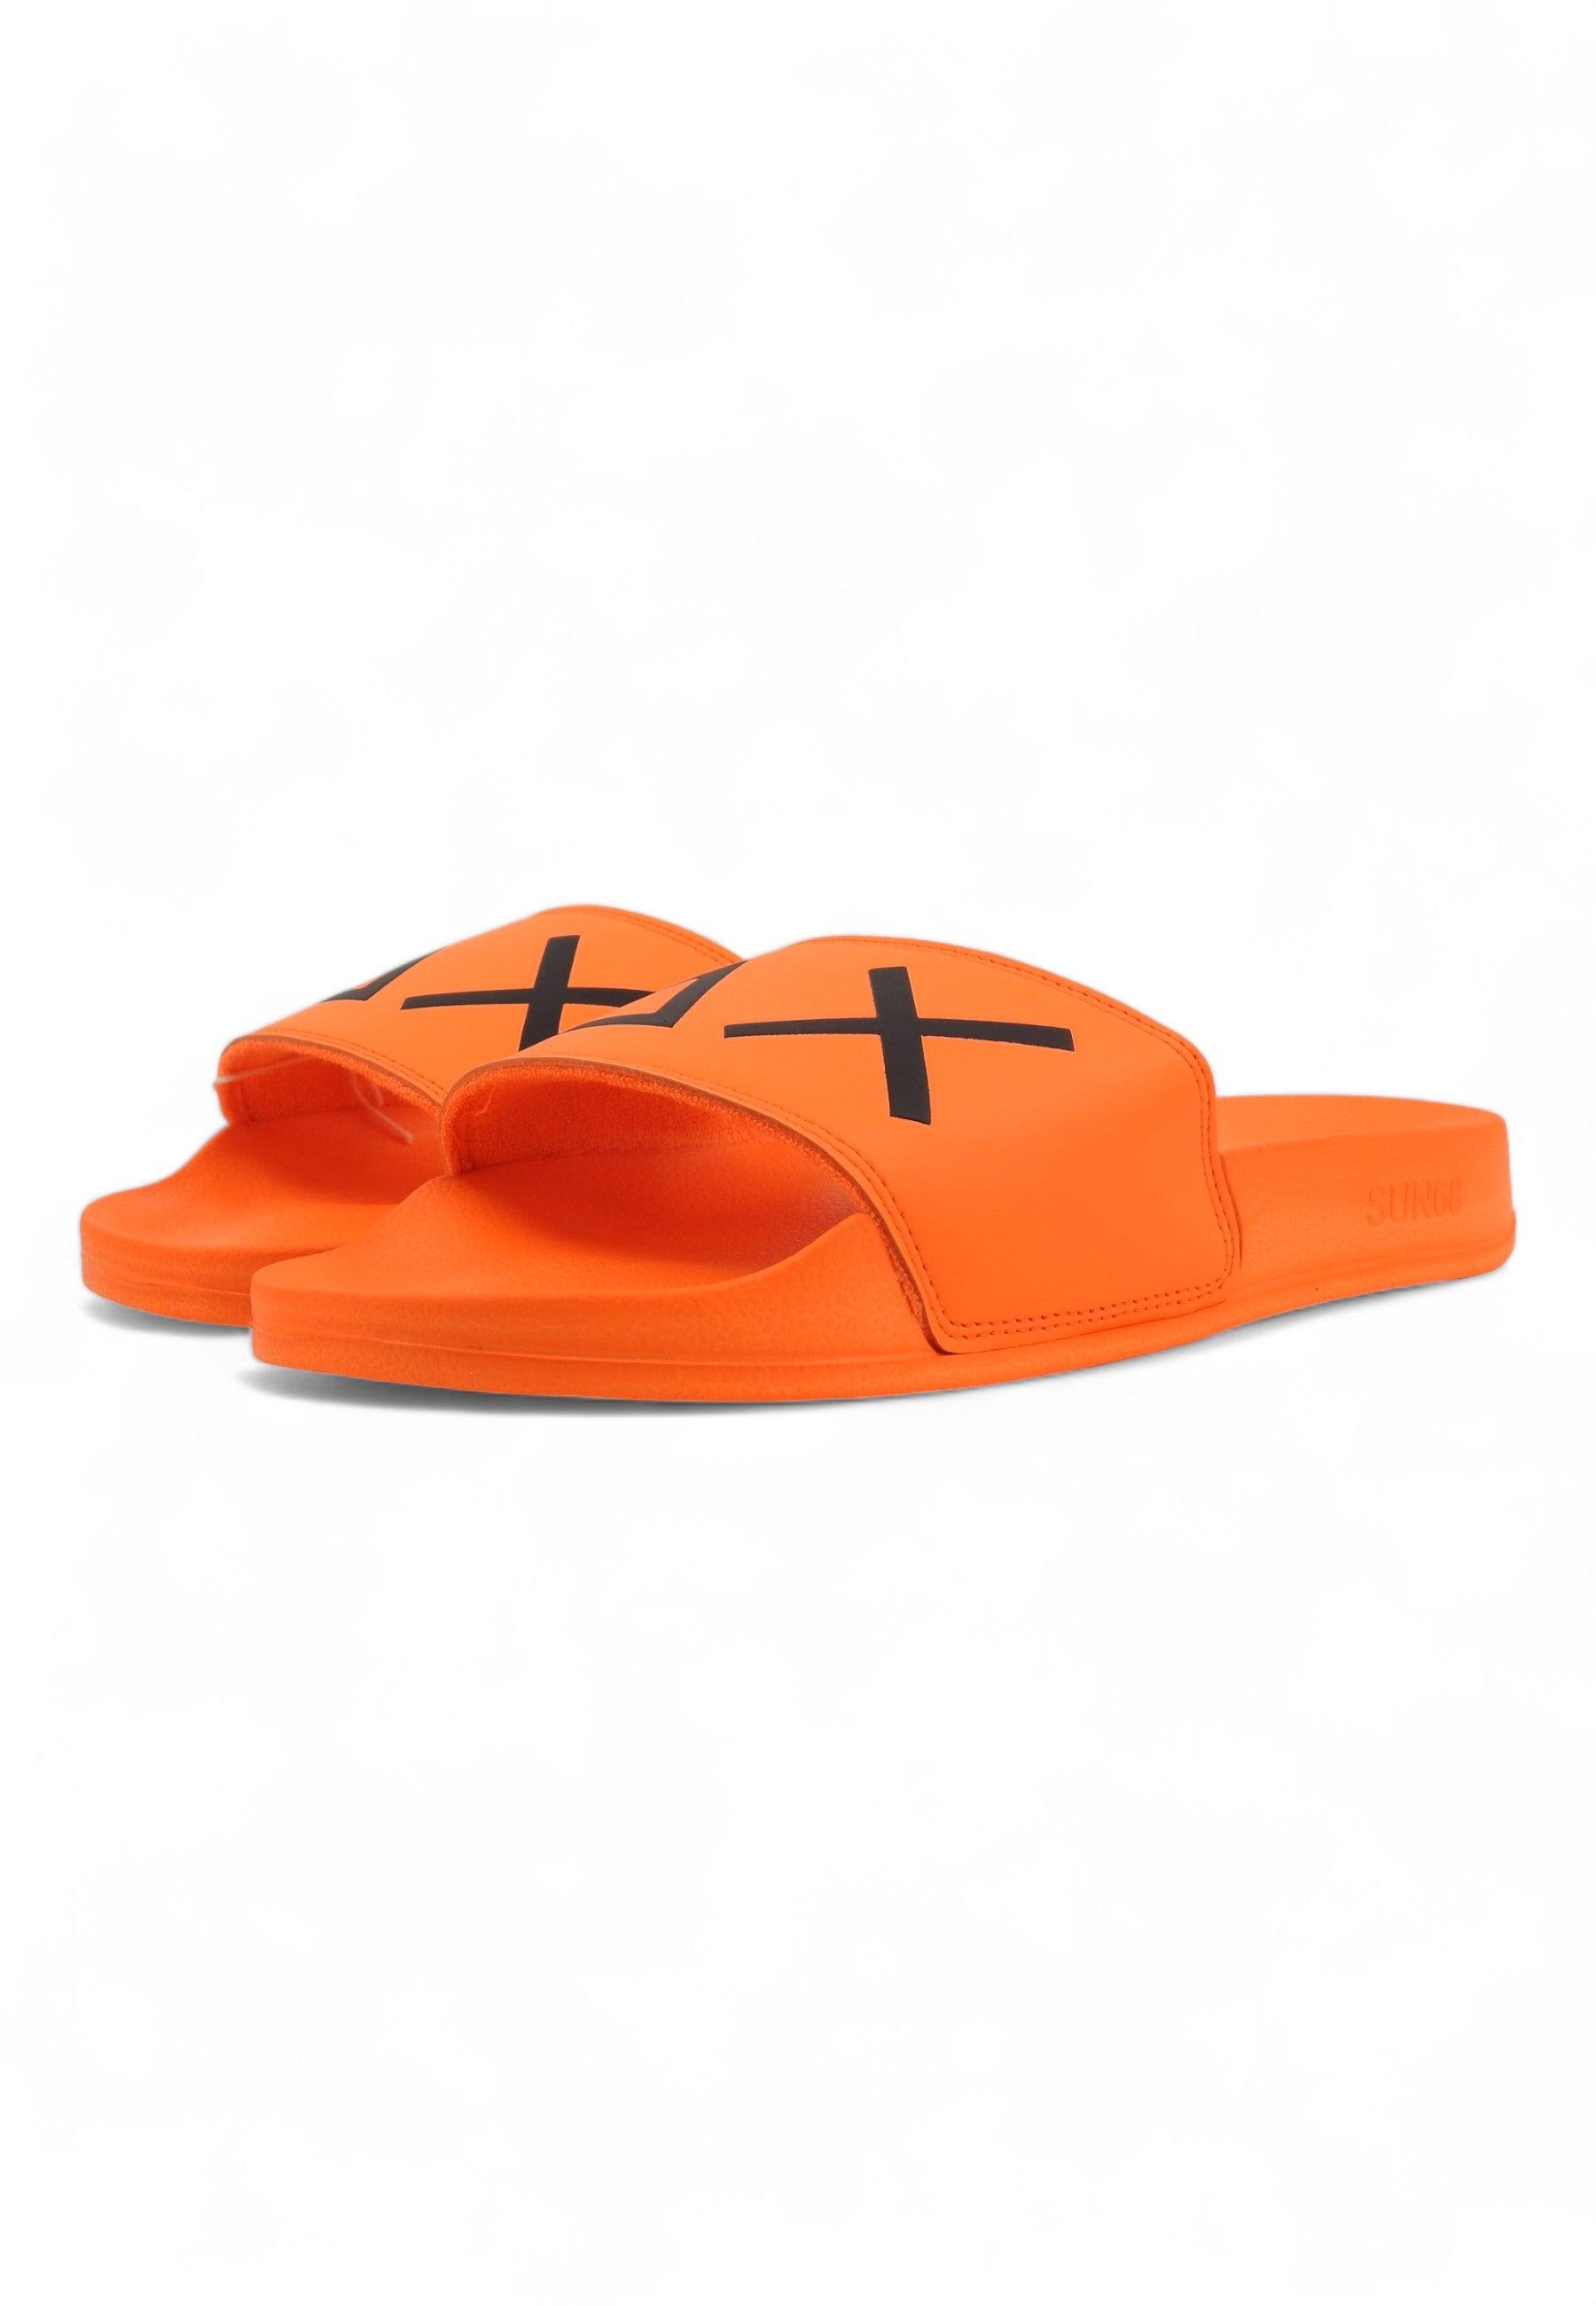 SUN68 Slippers Ciabatta Uomo Arancione Fluo X34103 - Sandrini Calzature e Abbigliamento